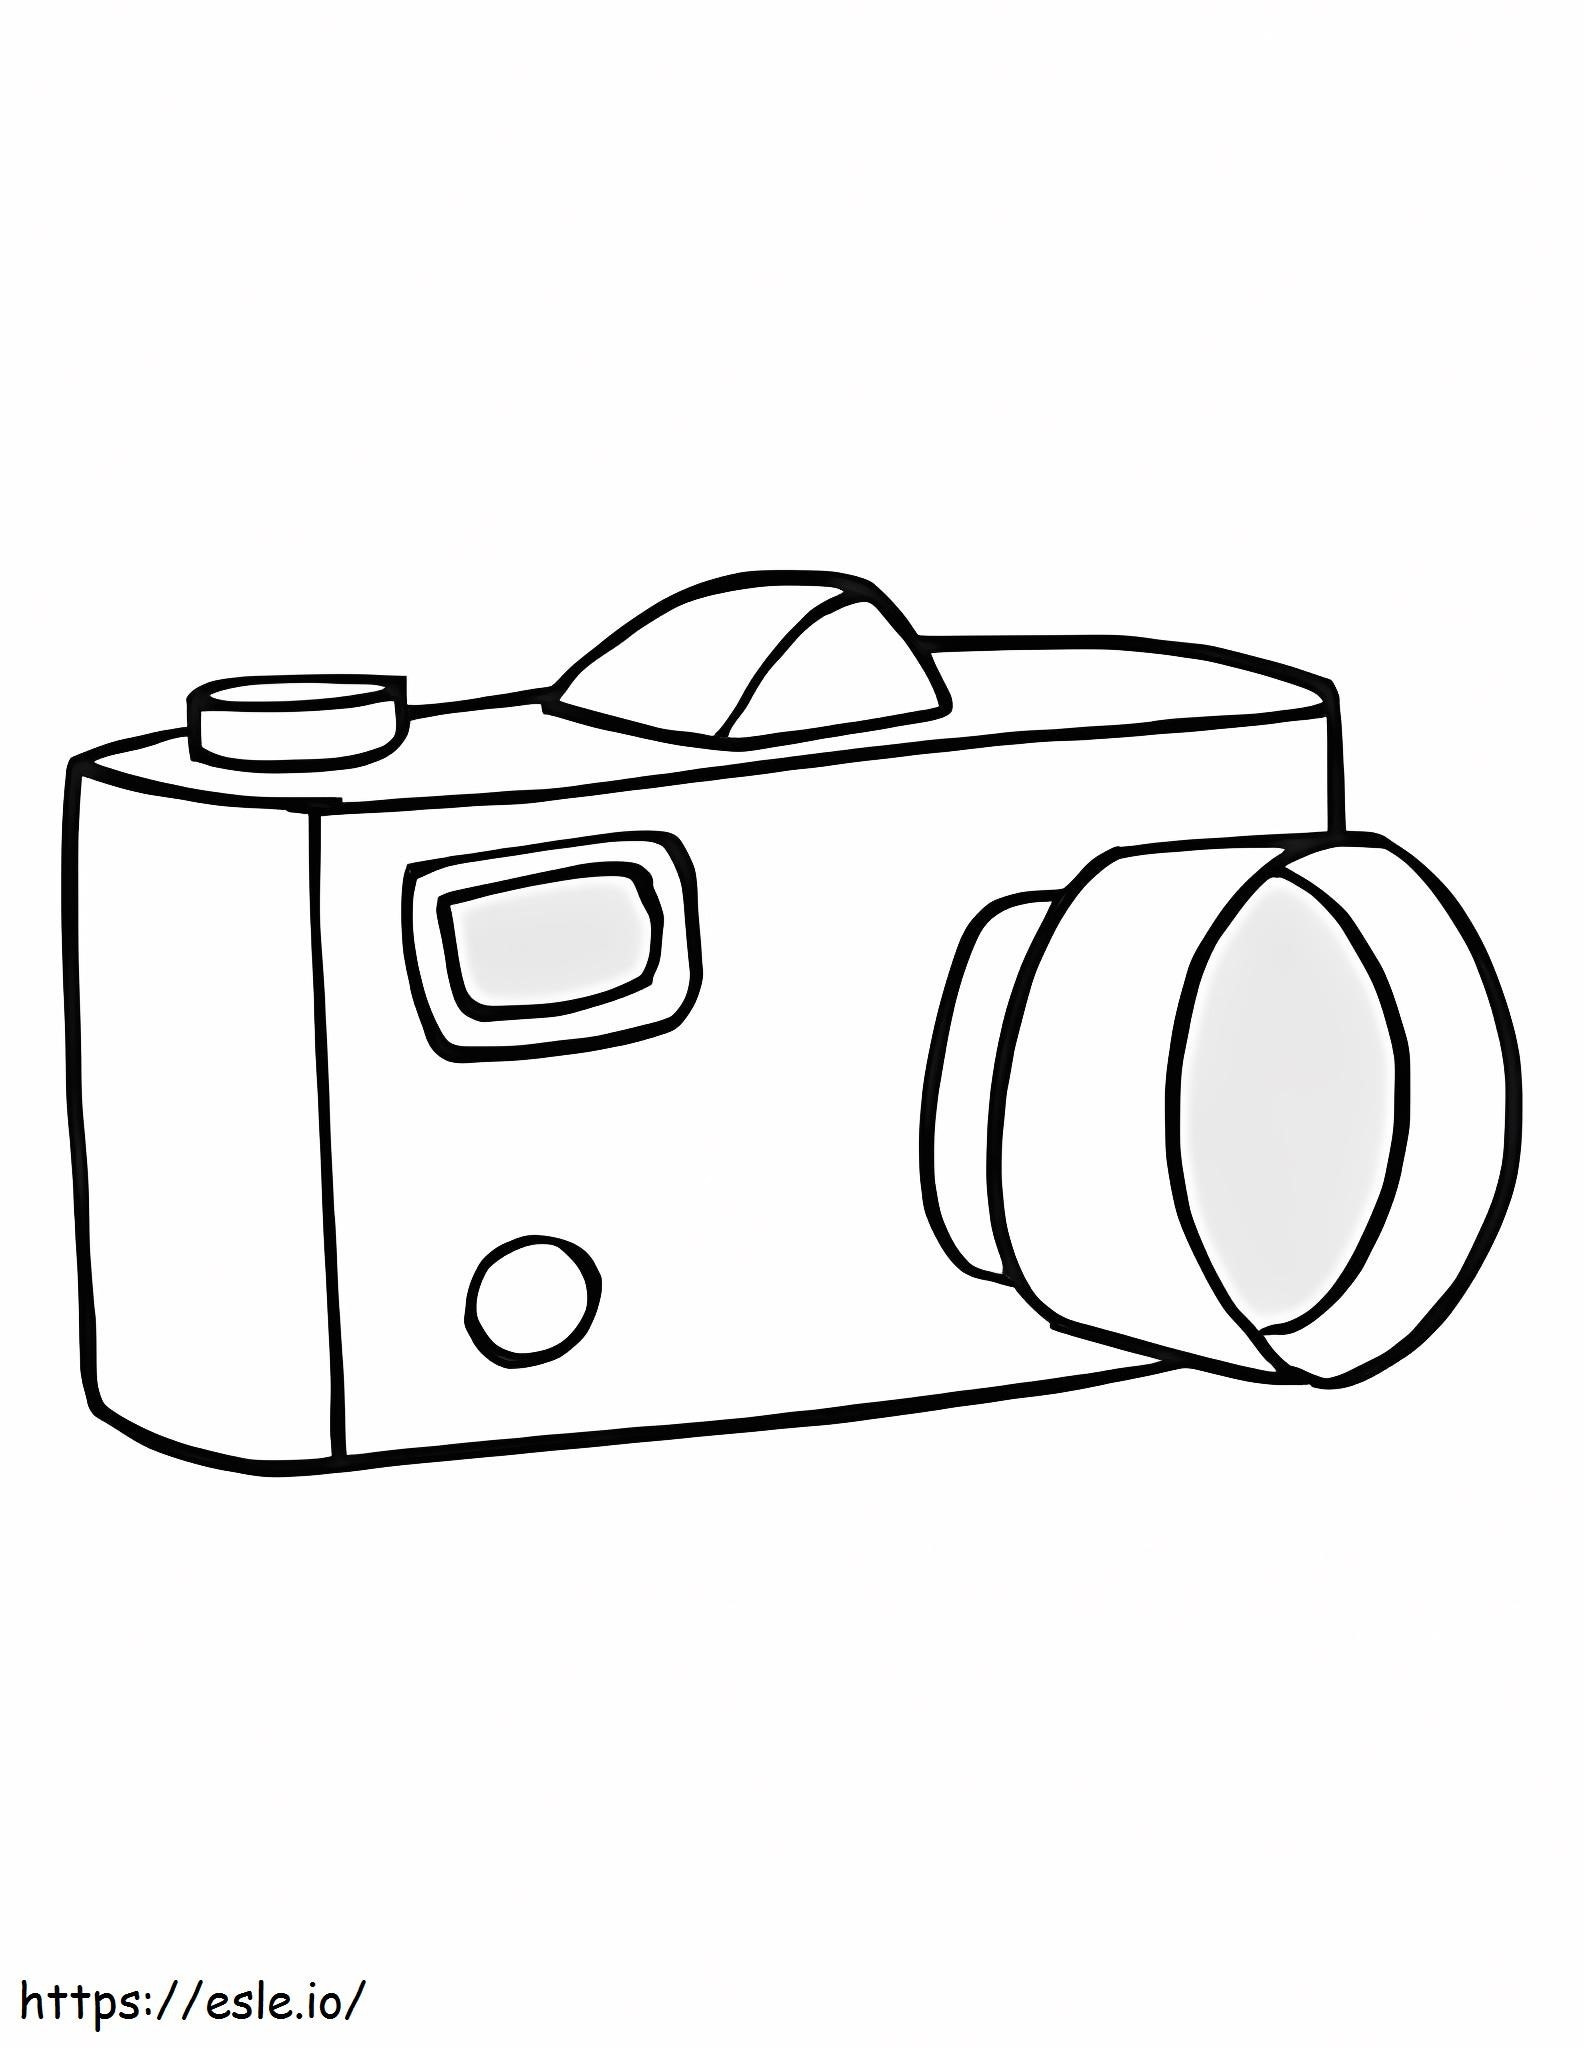 Fotocamera per disegno a mano da colorare